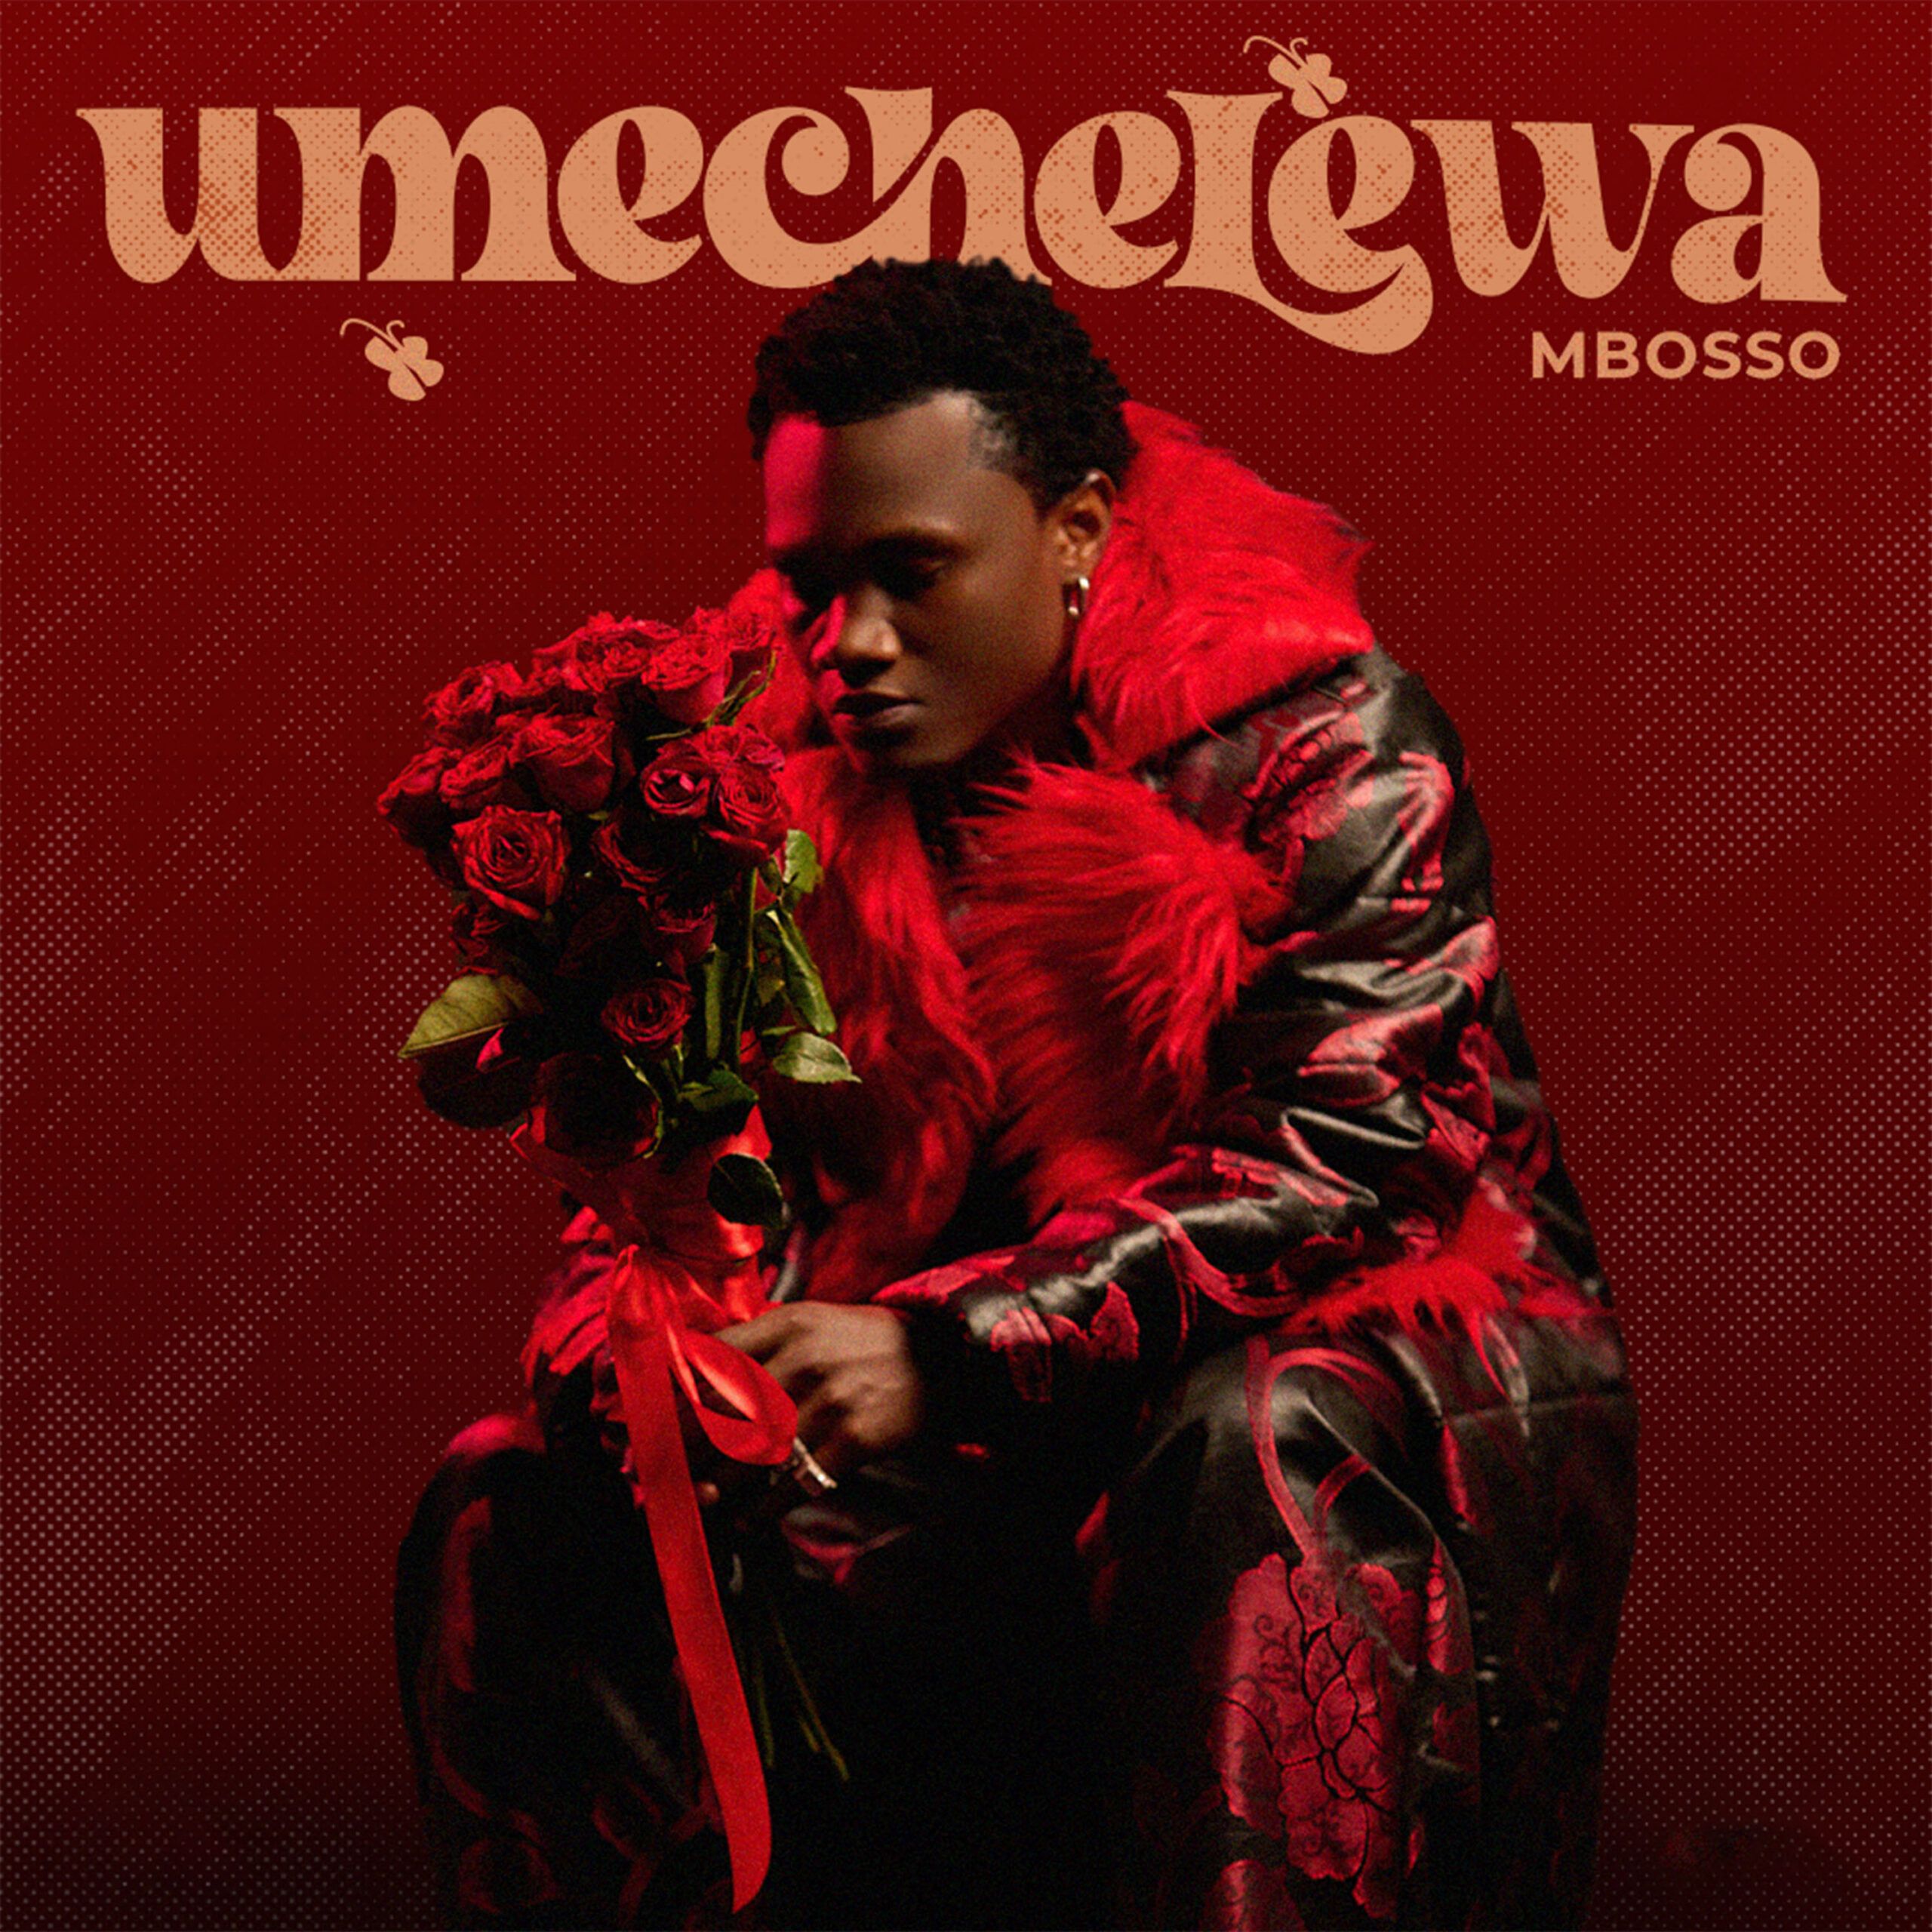 Mbosso - Umechelewa